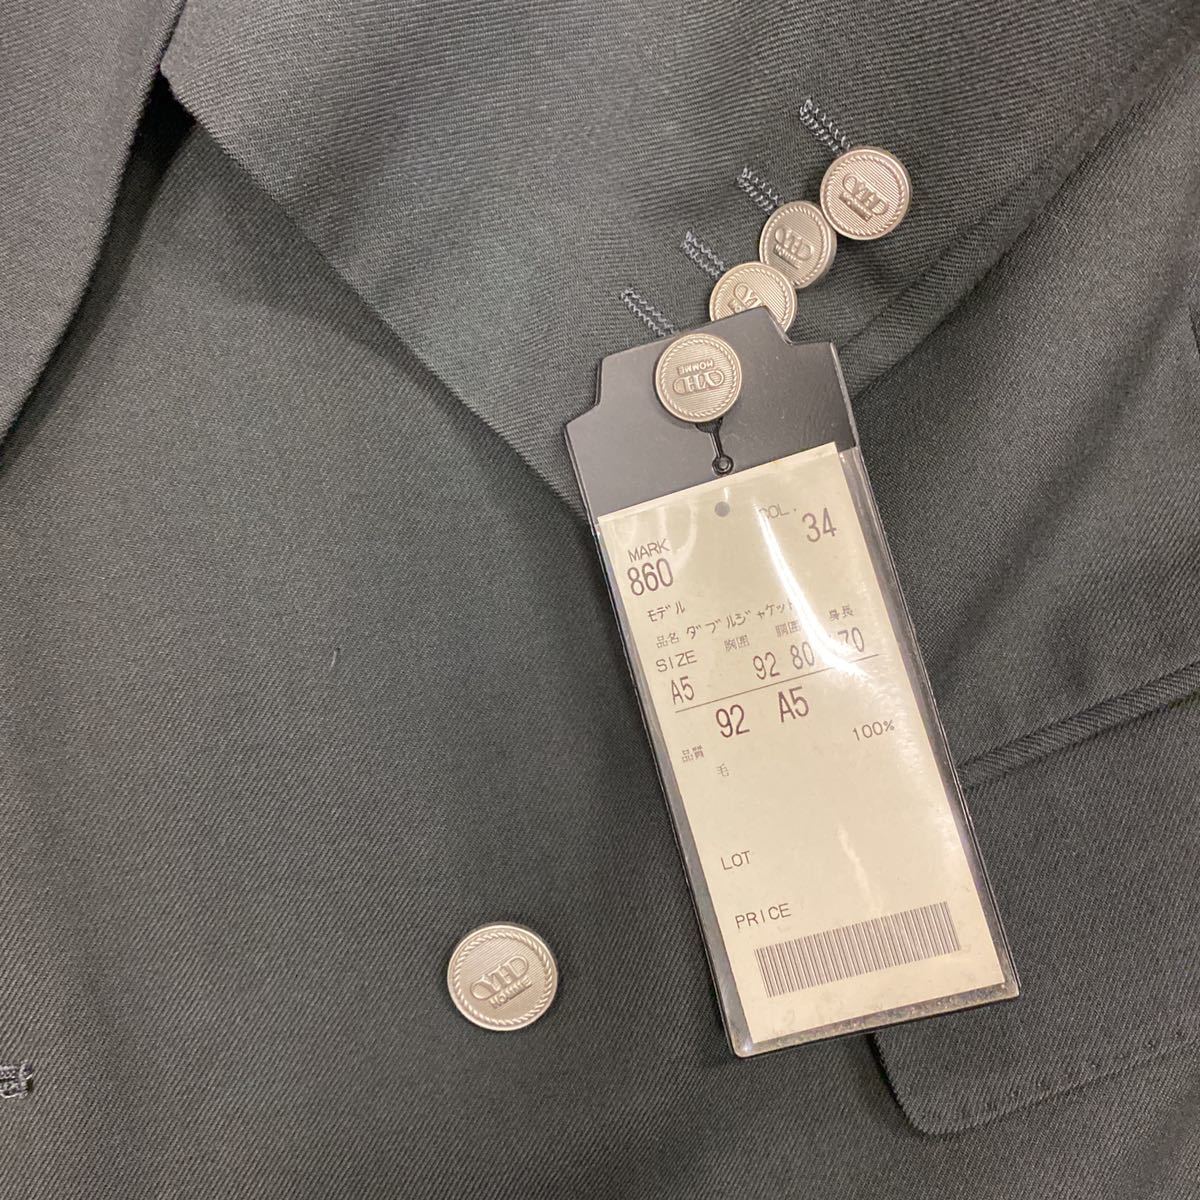  с биркой супер-скидка YUKIKO HANAI двубортный костюм шерсть 100% выставить размер A5 forest green серебряный кнопка flano толстый ткань 